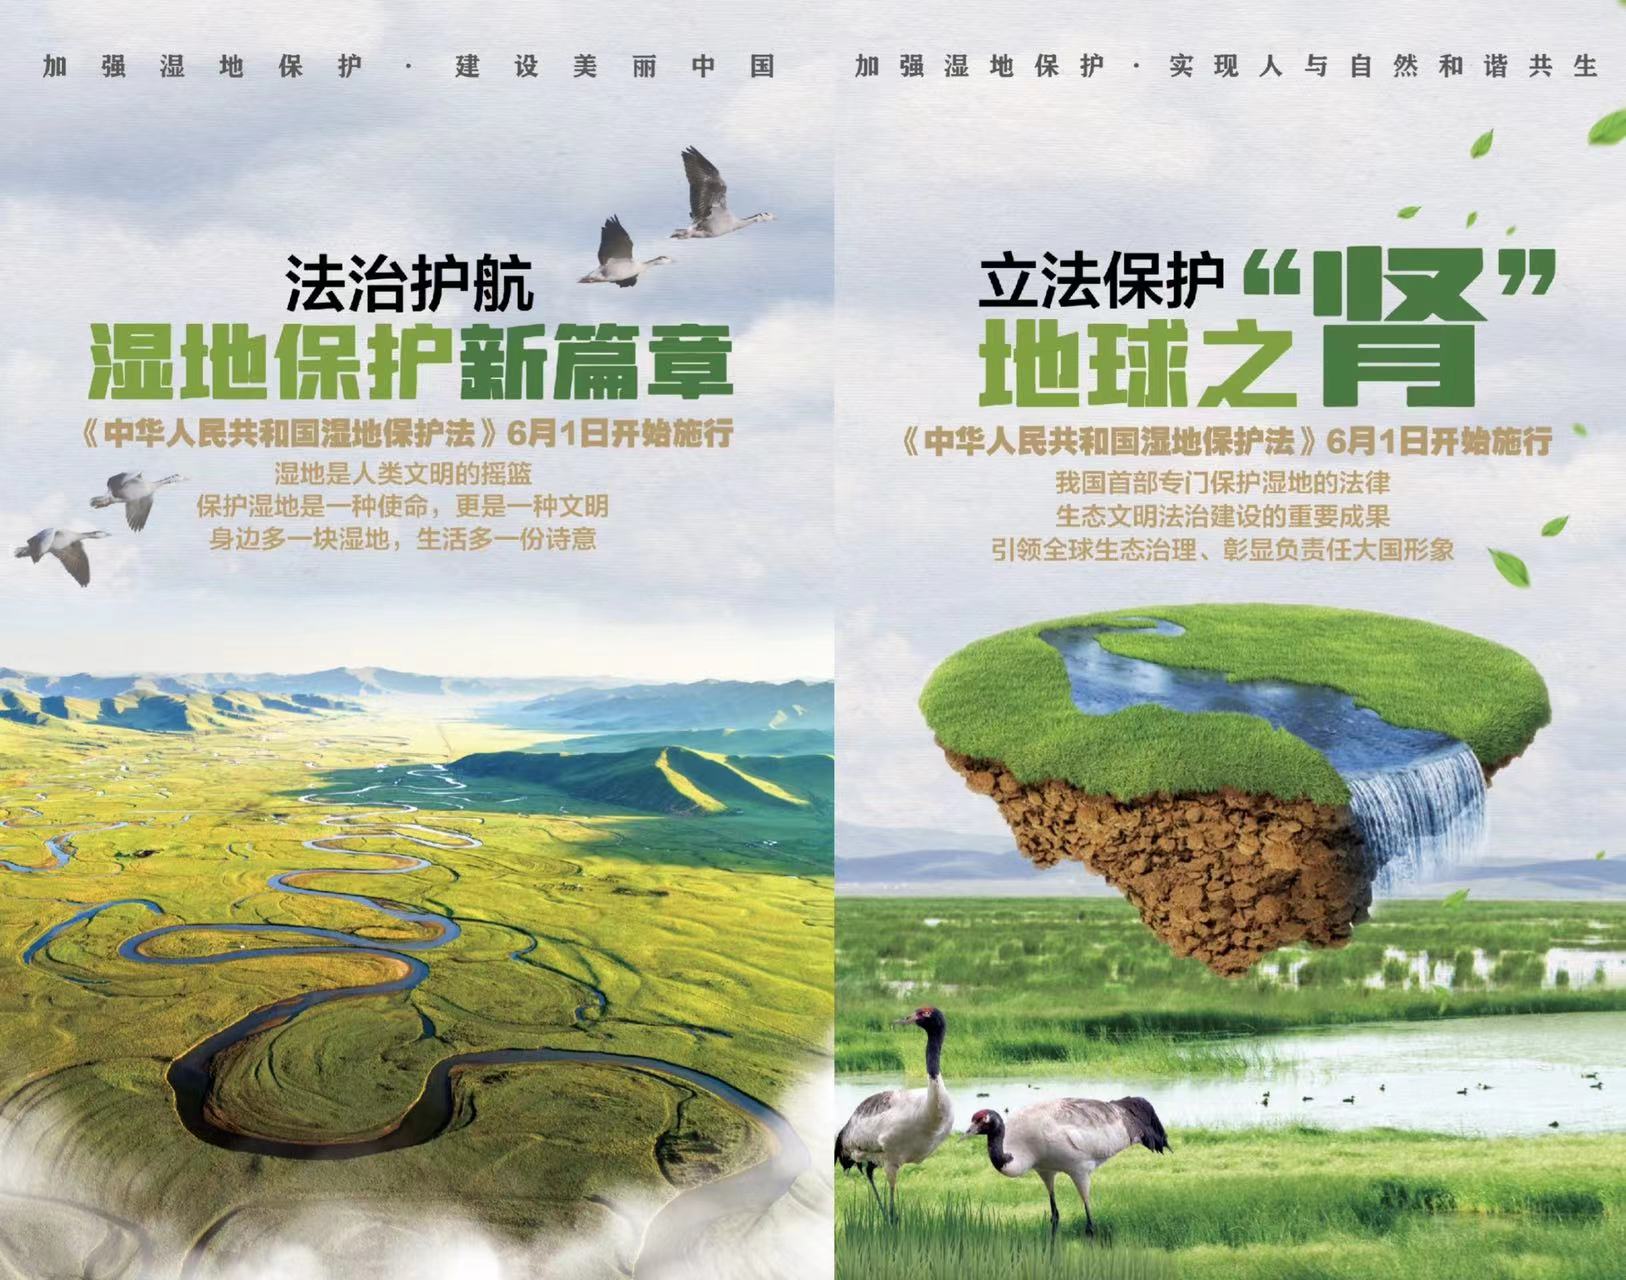 市林业总站开展《中华人民共和国湿地保护法》宣传工作1.jpg